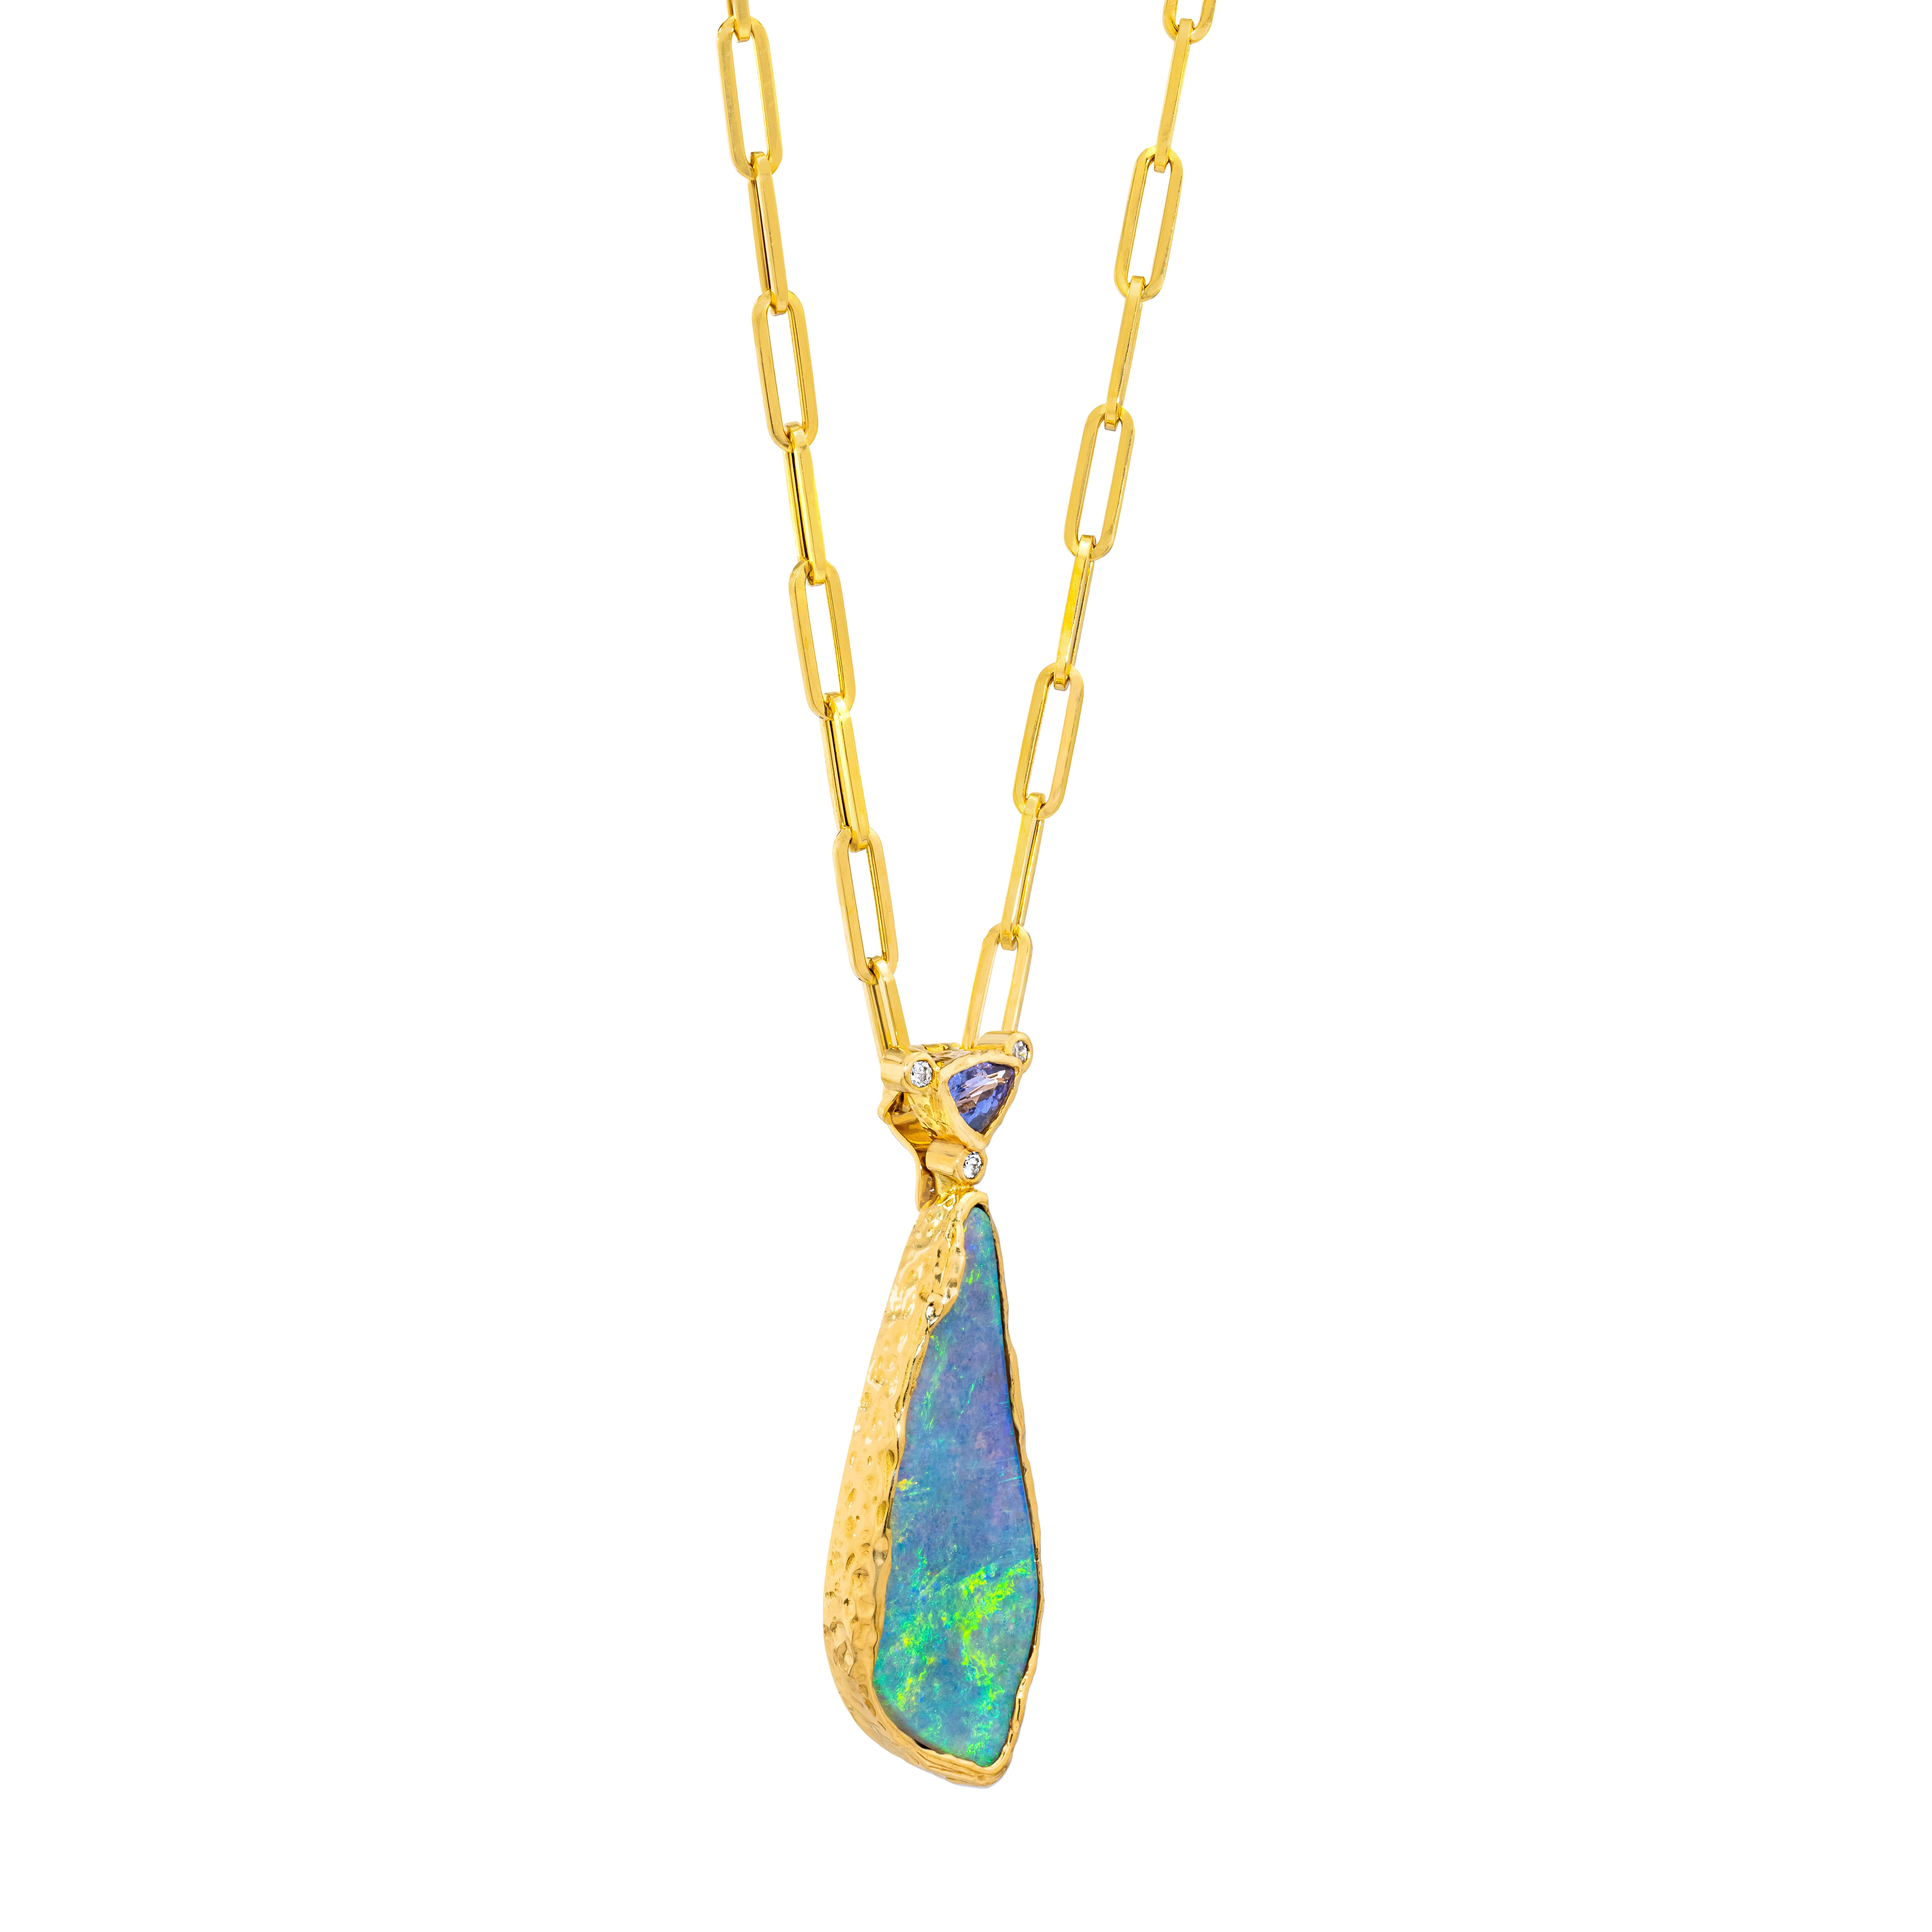 Quelle belle pièce unique !  L'opale Boulder australienne de forme libre présente d'incroyables éclairs de vert et de bleu avec des nuances d'orange et de rouge.  L'opale est enrobée d'or 18 carats et offre une sensation de douceur organique.  La